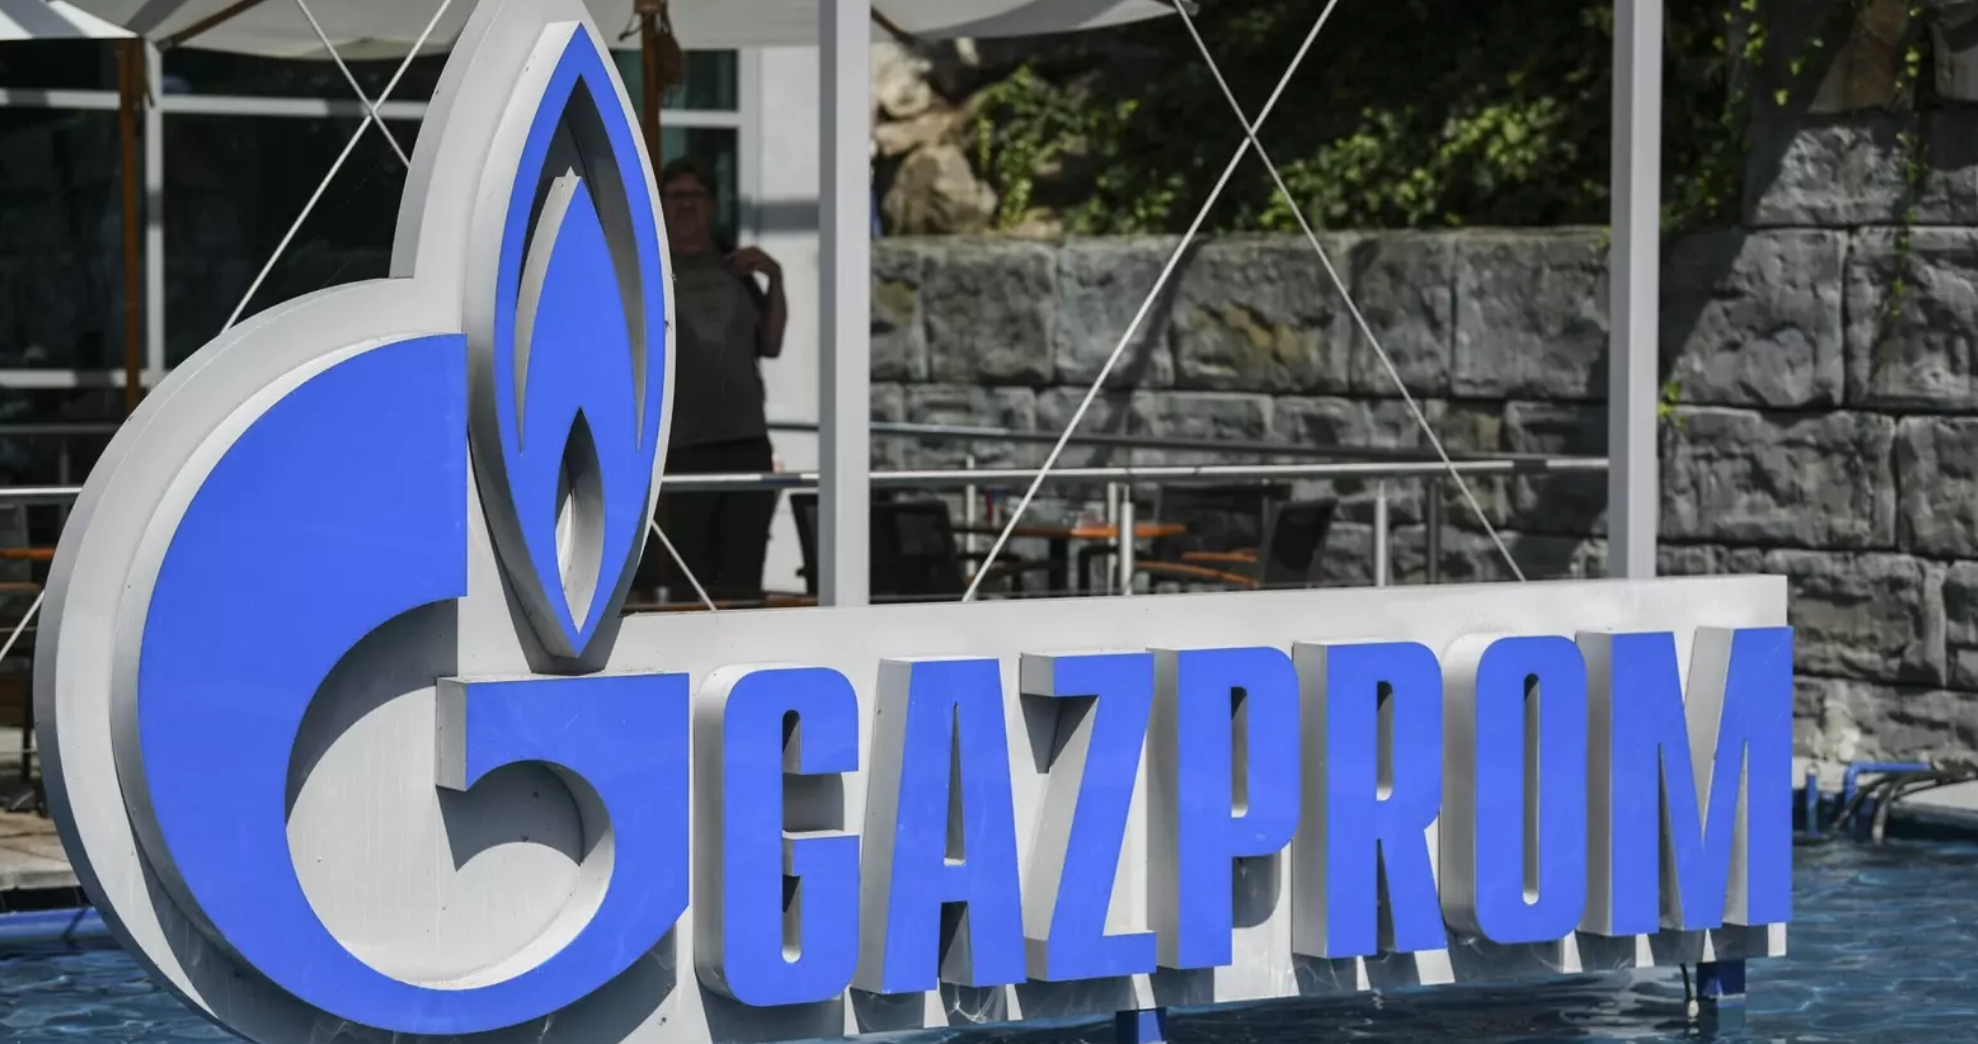 La rusa Gazprom entrega a la italiana ENI solo el 50% del suministro de gas pedido